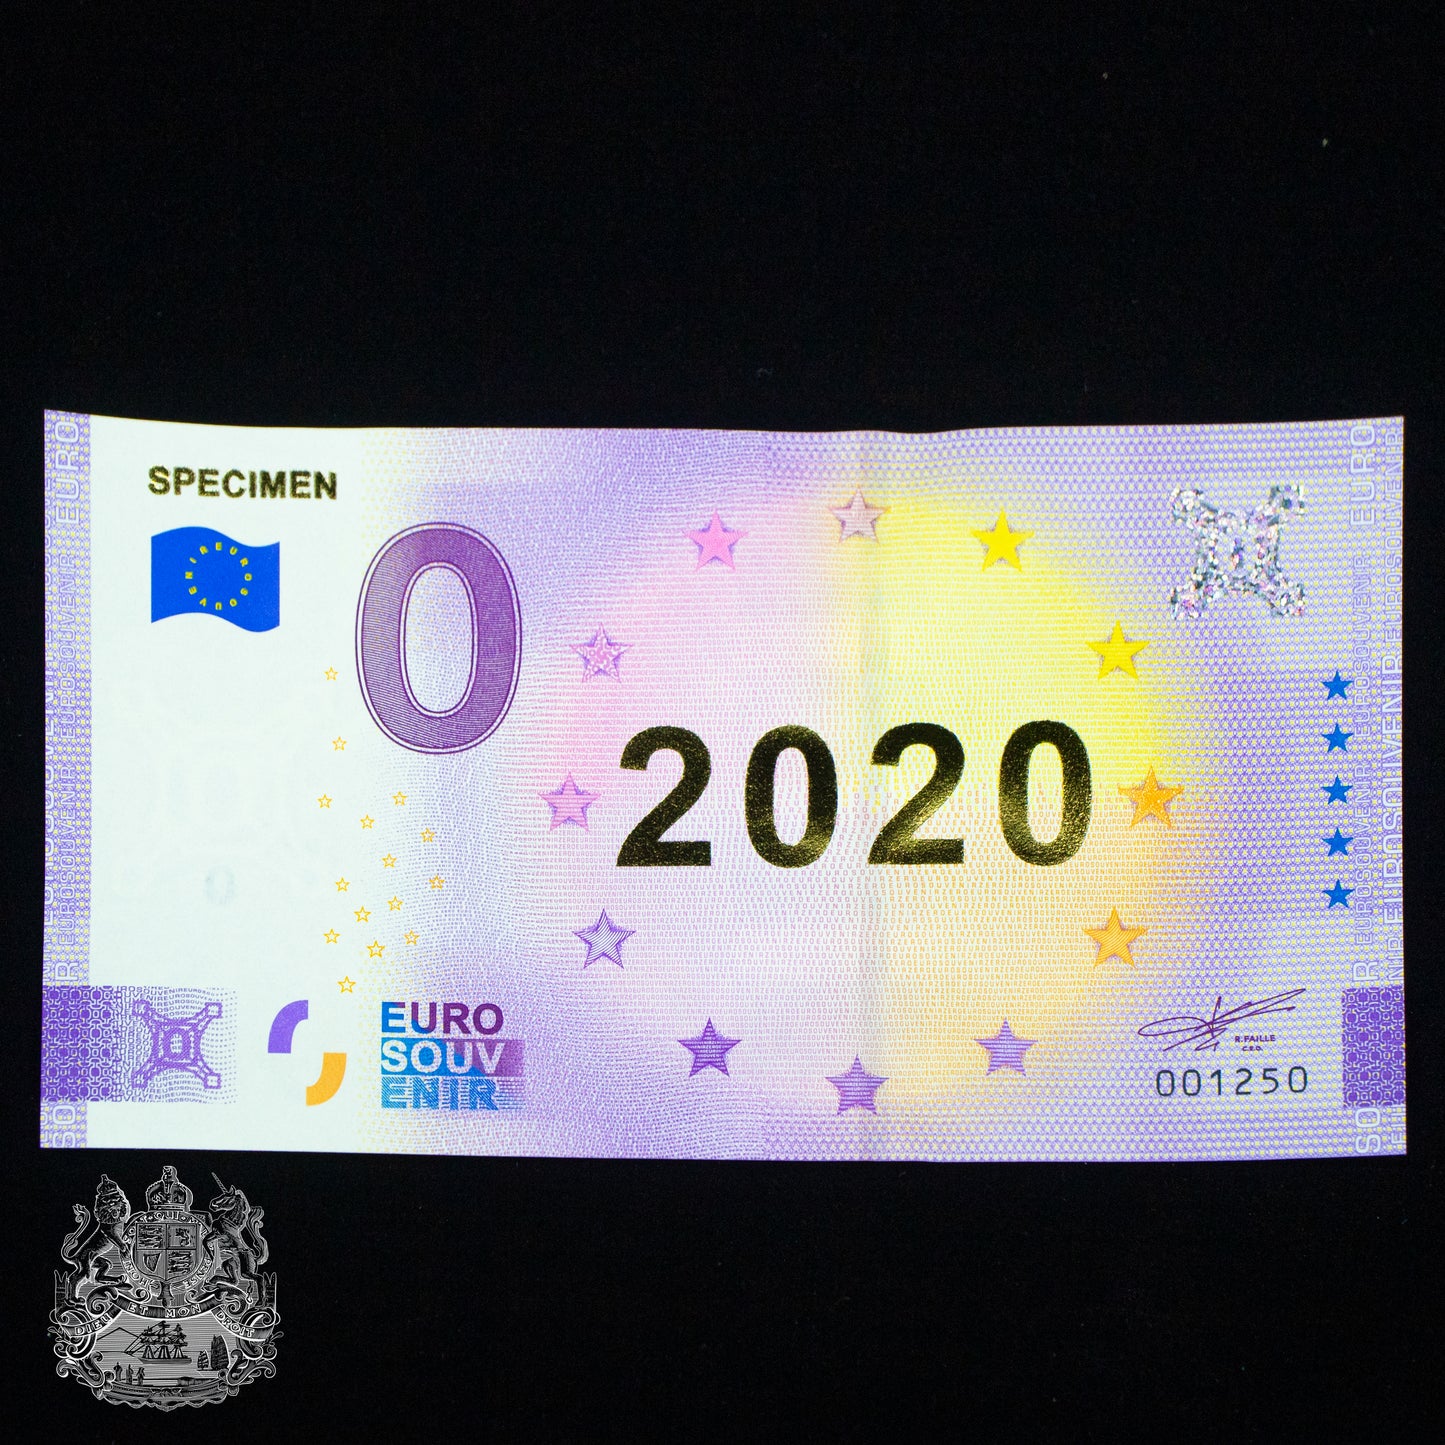 €0 Specimen 2020